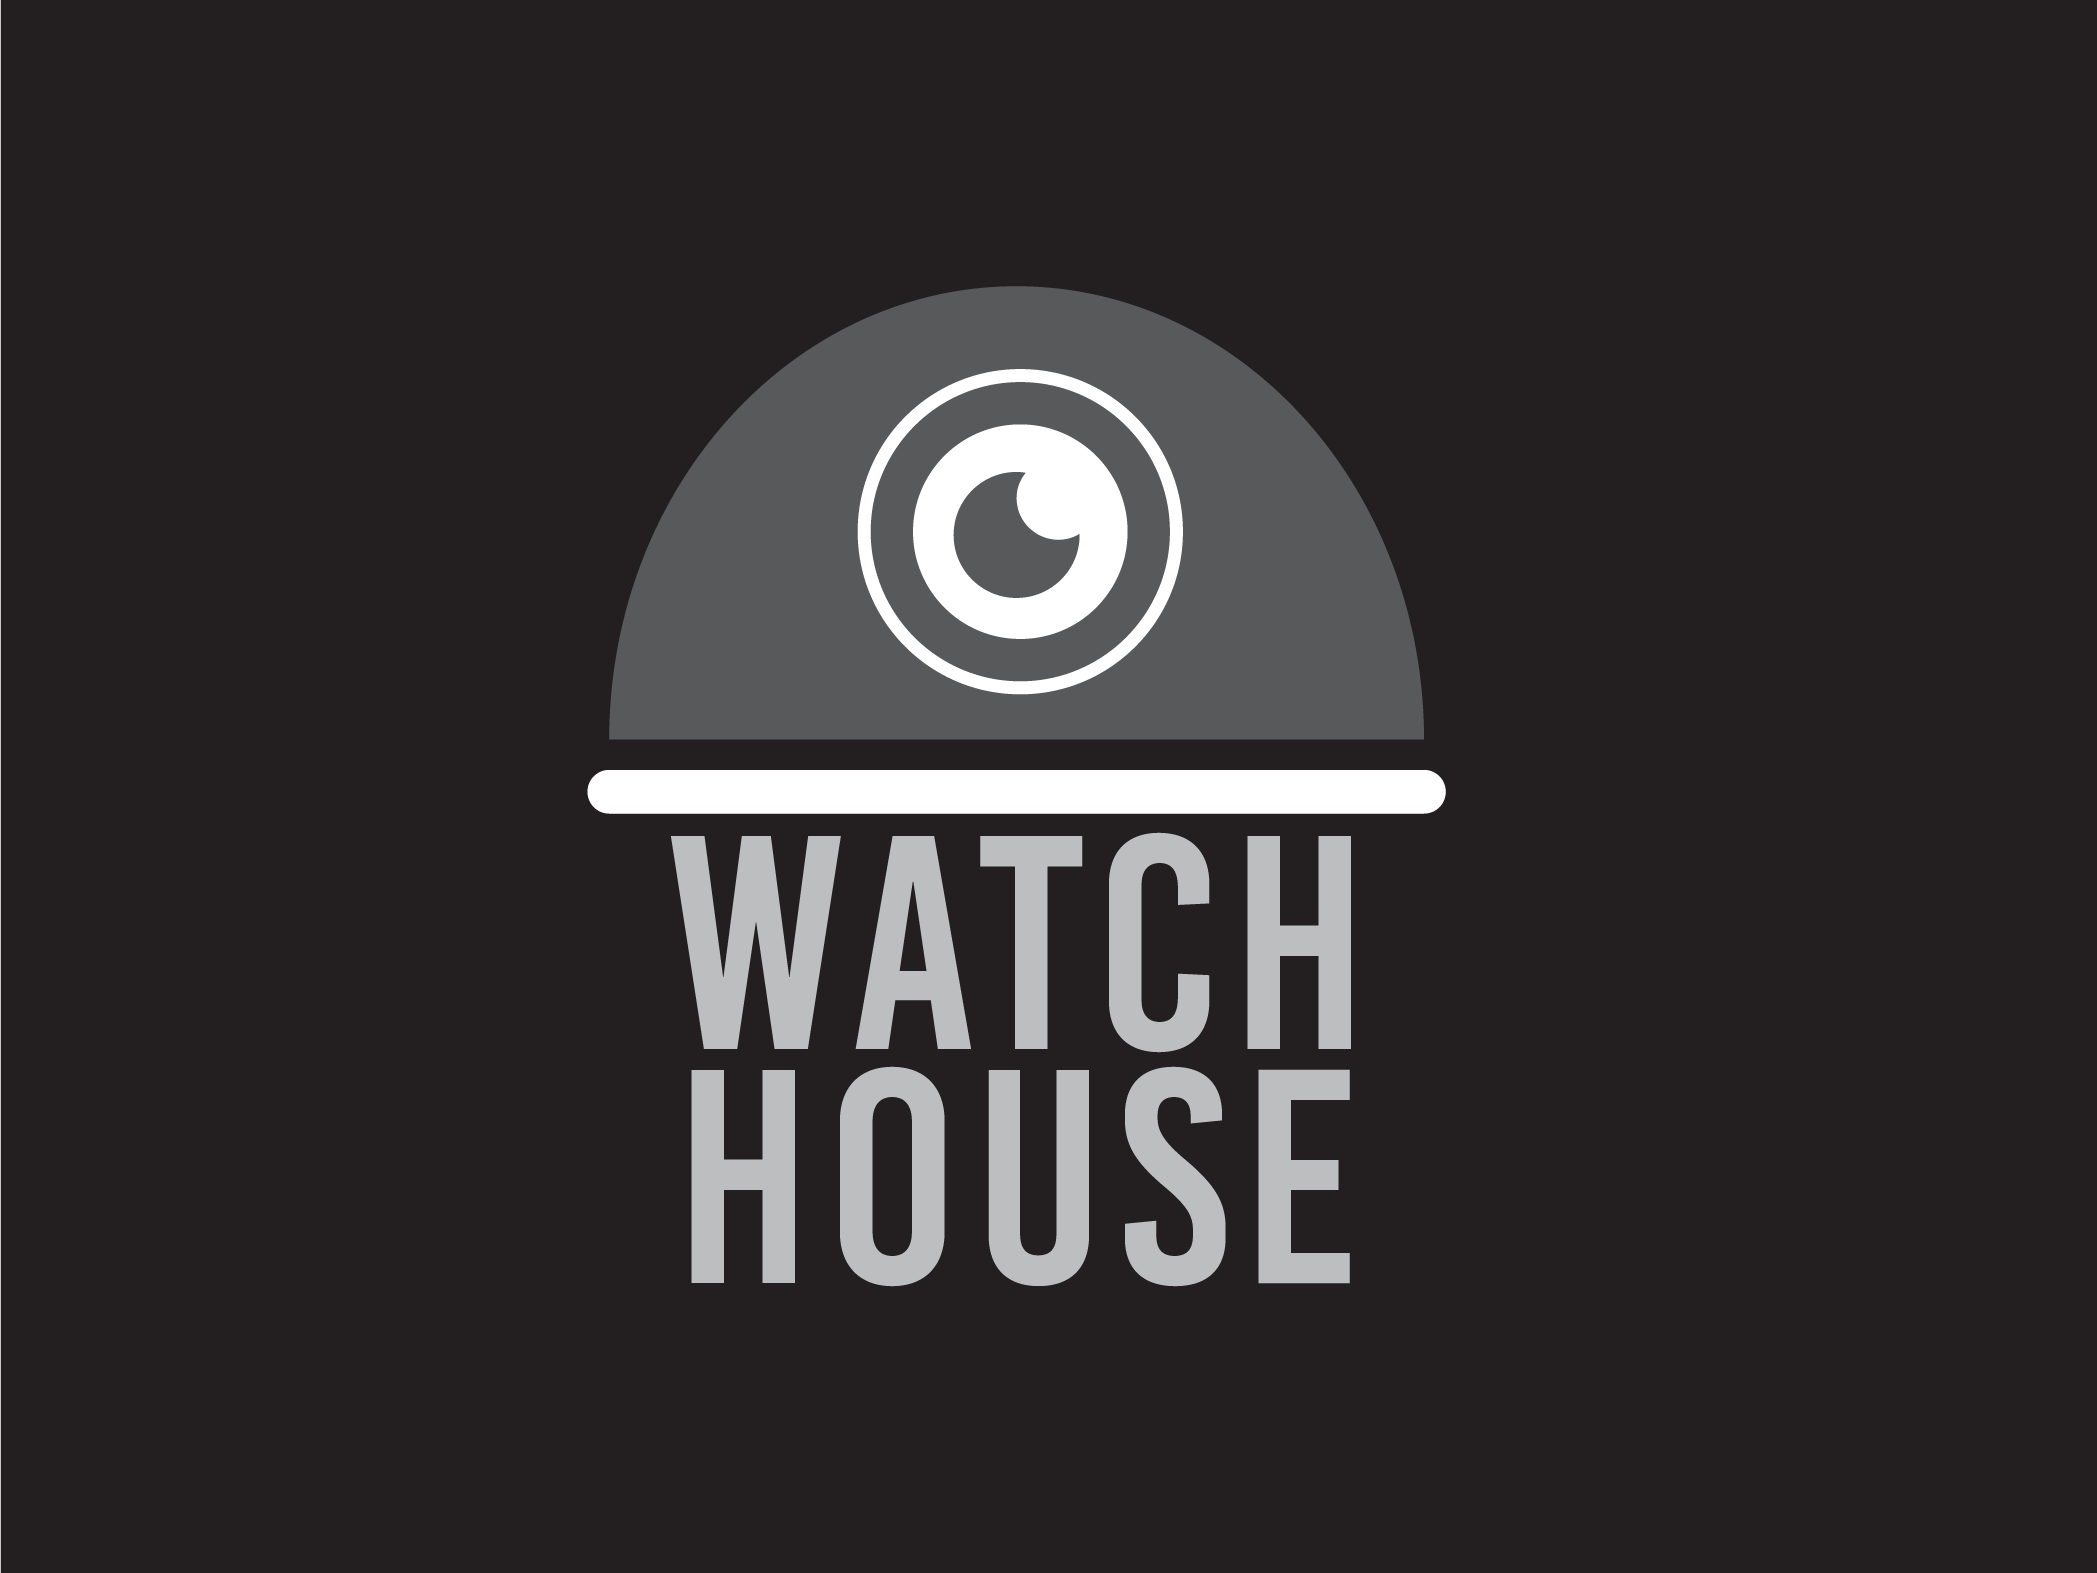 Logo Watch House 3 by Rifqi Fadhlurrahman Halim on Dribbble